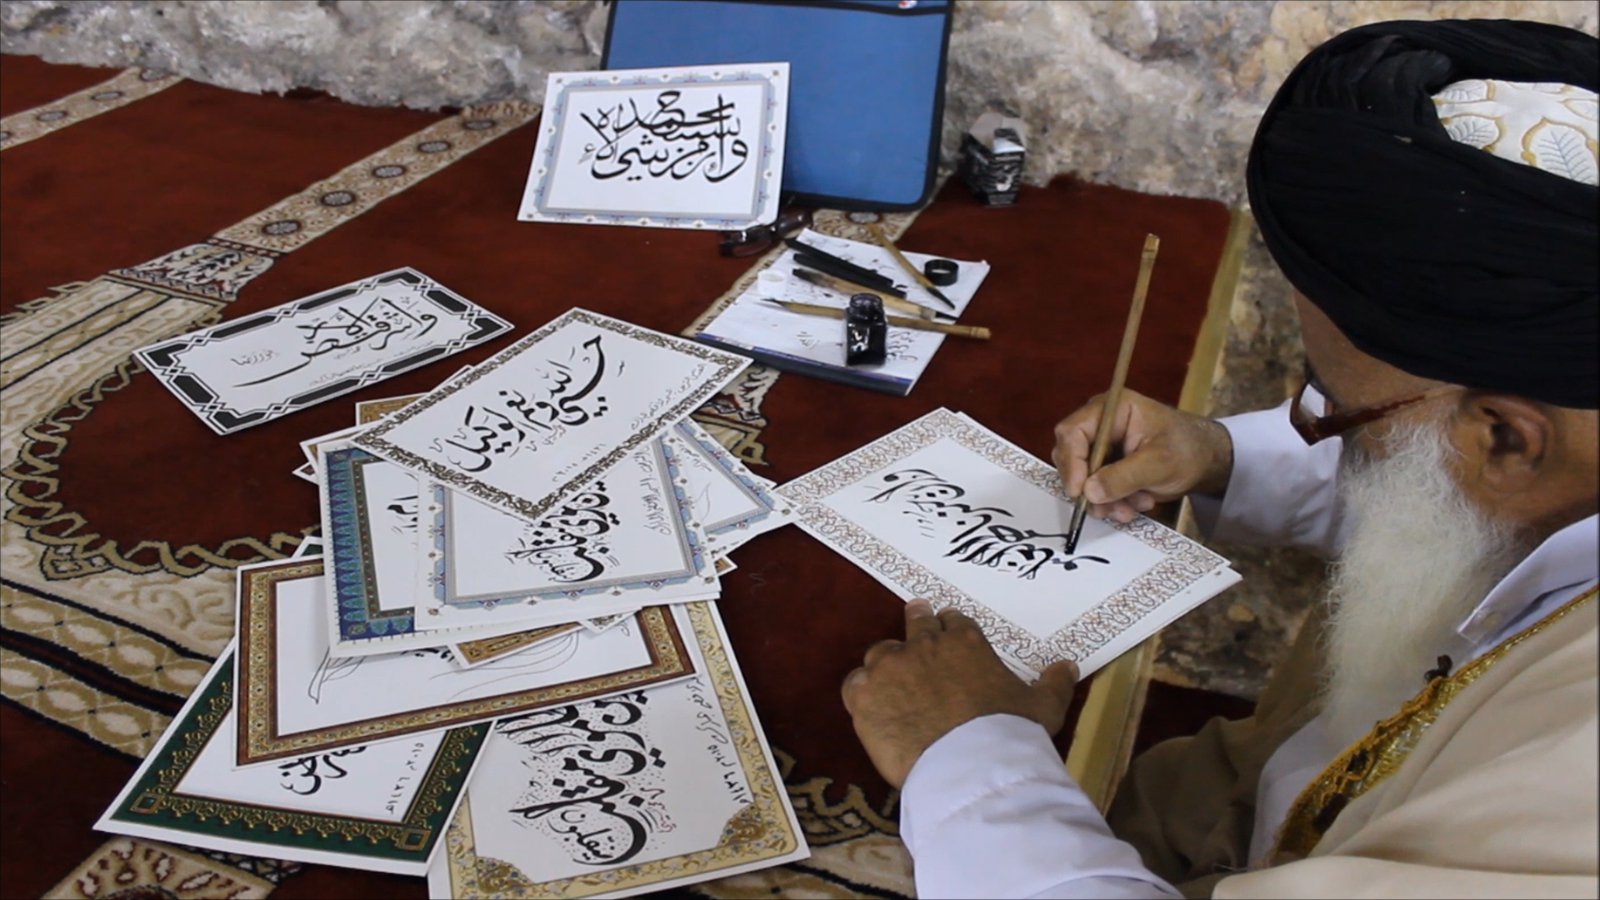 الخط الفارسي مثل اللغة الفارسية تأثر بشكل واسع باللغة العربية وخطها (الجزيرة)